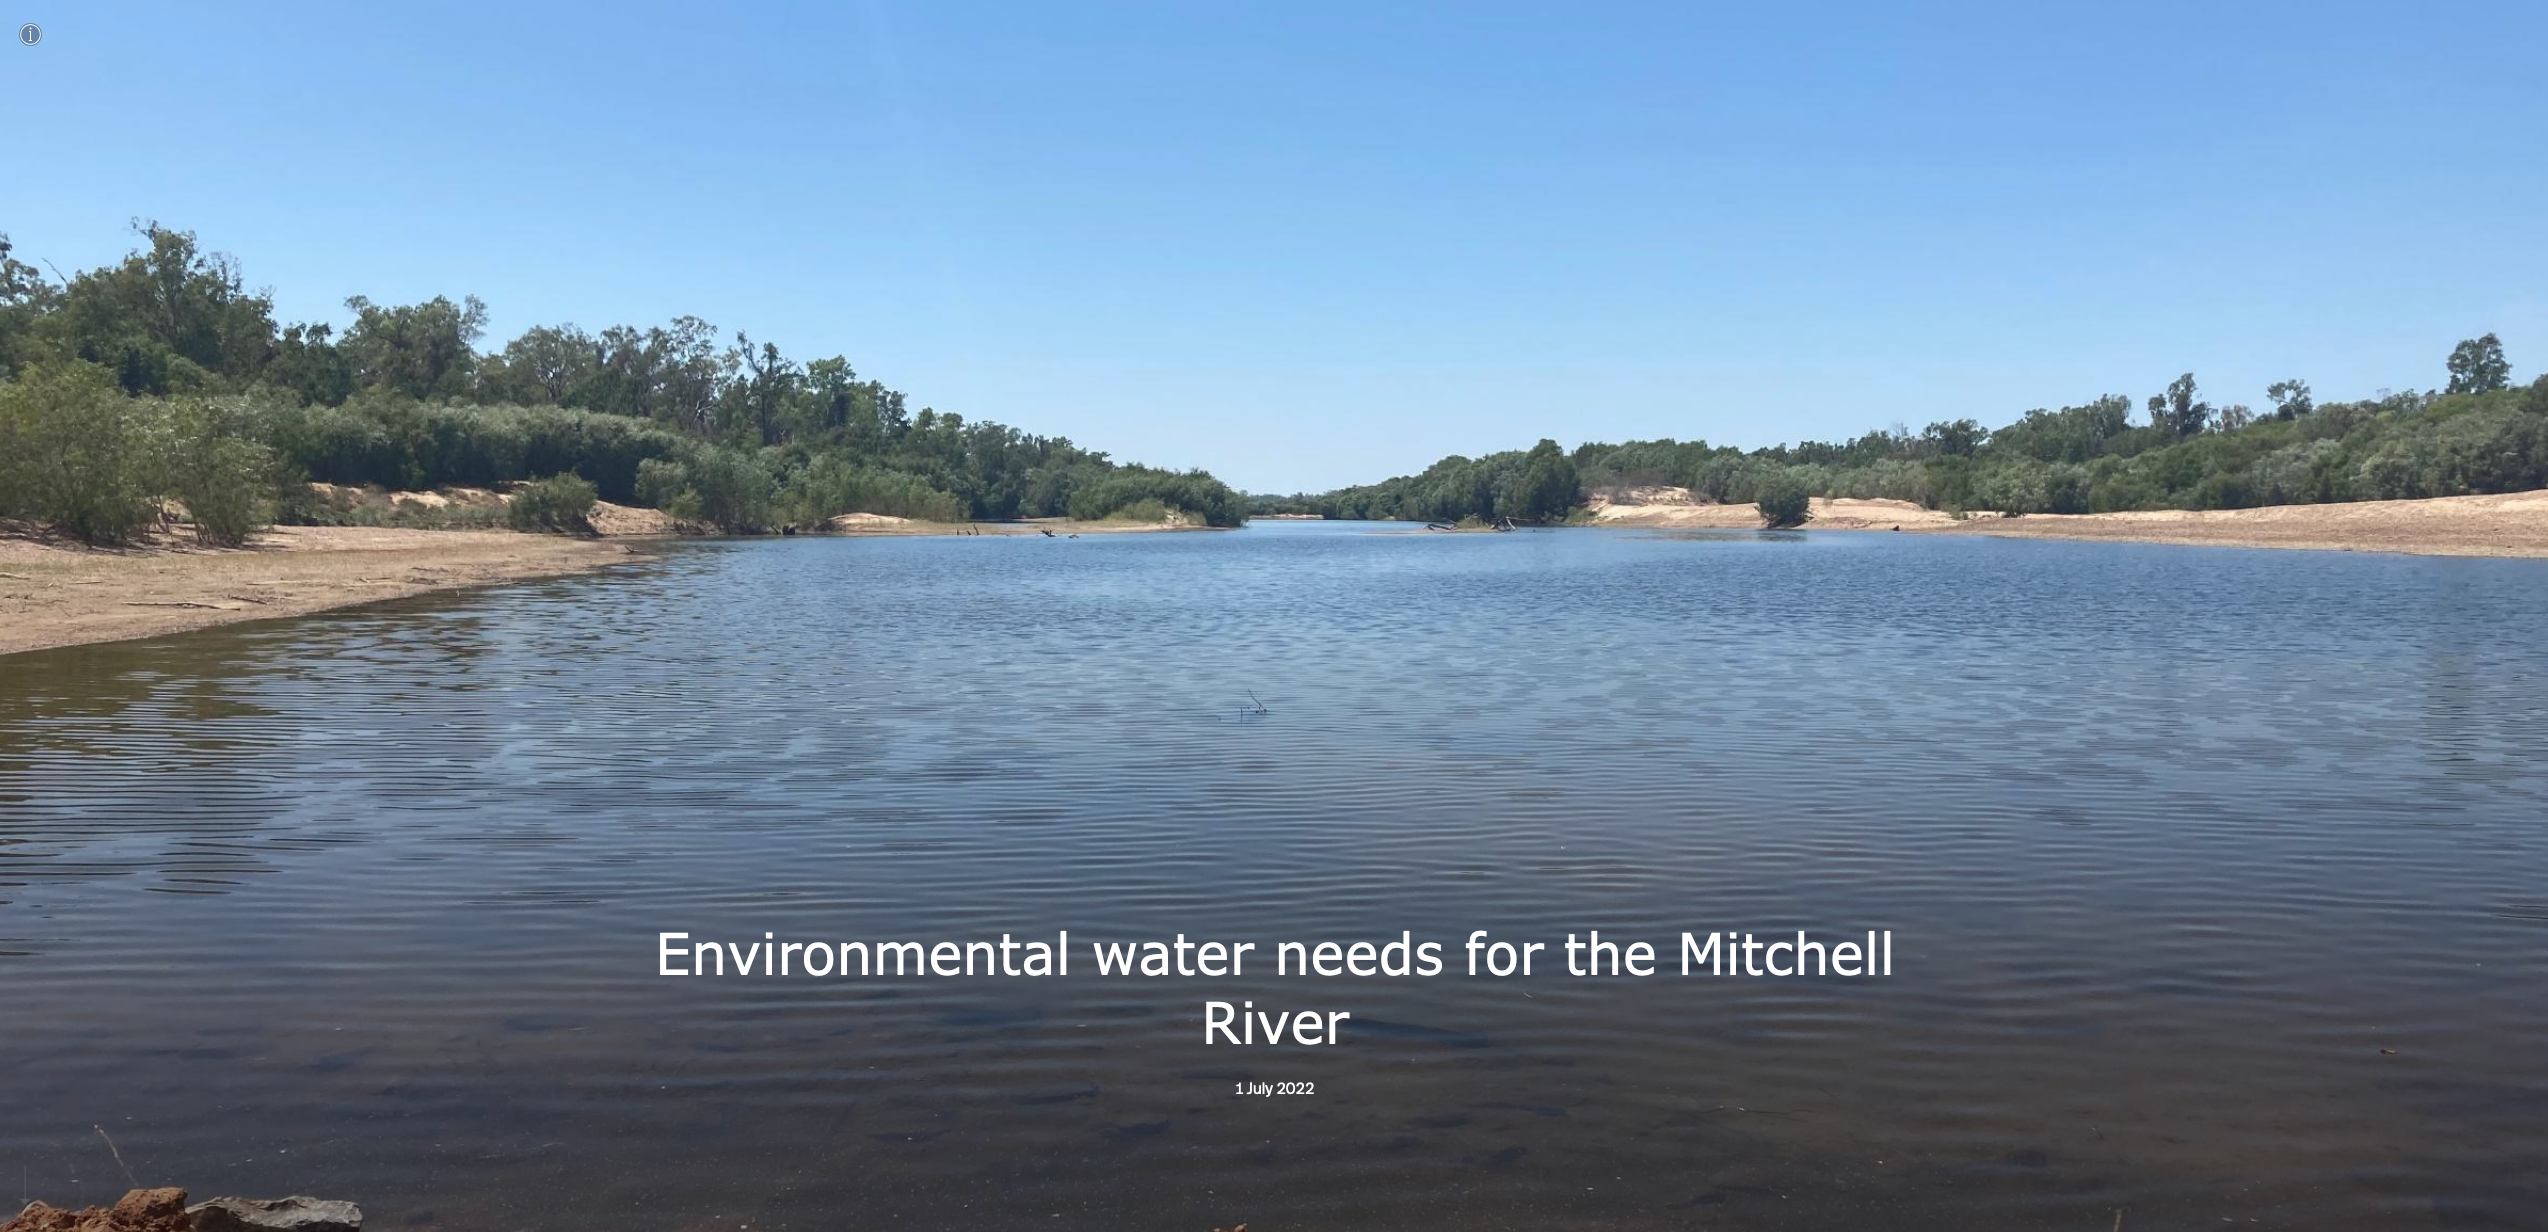 Mitchell River storymap image. Credit: Chantal Saint Ange.